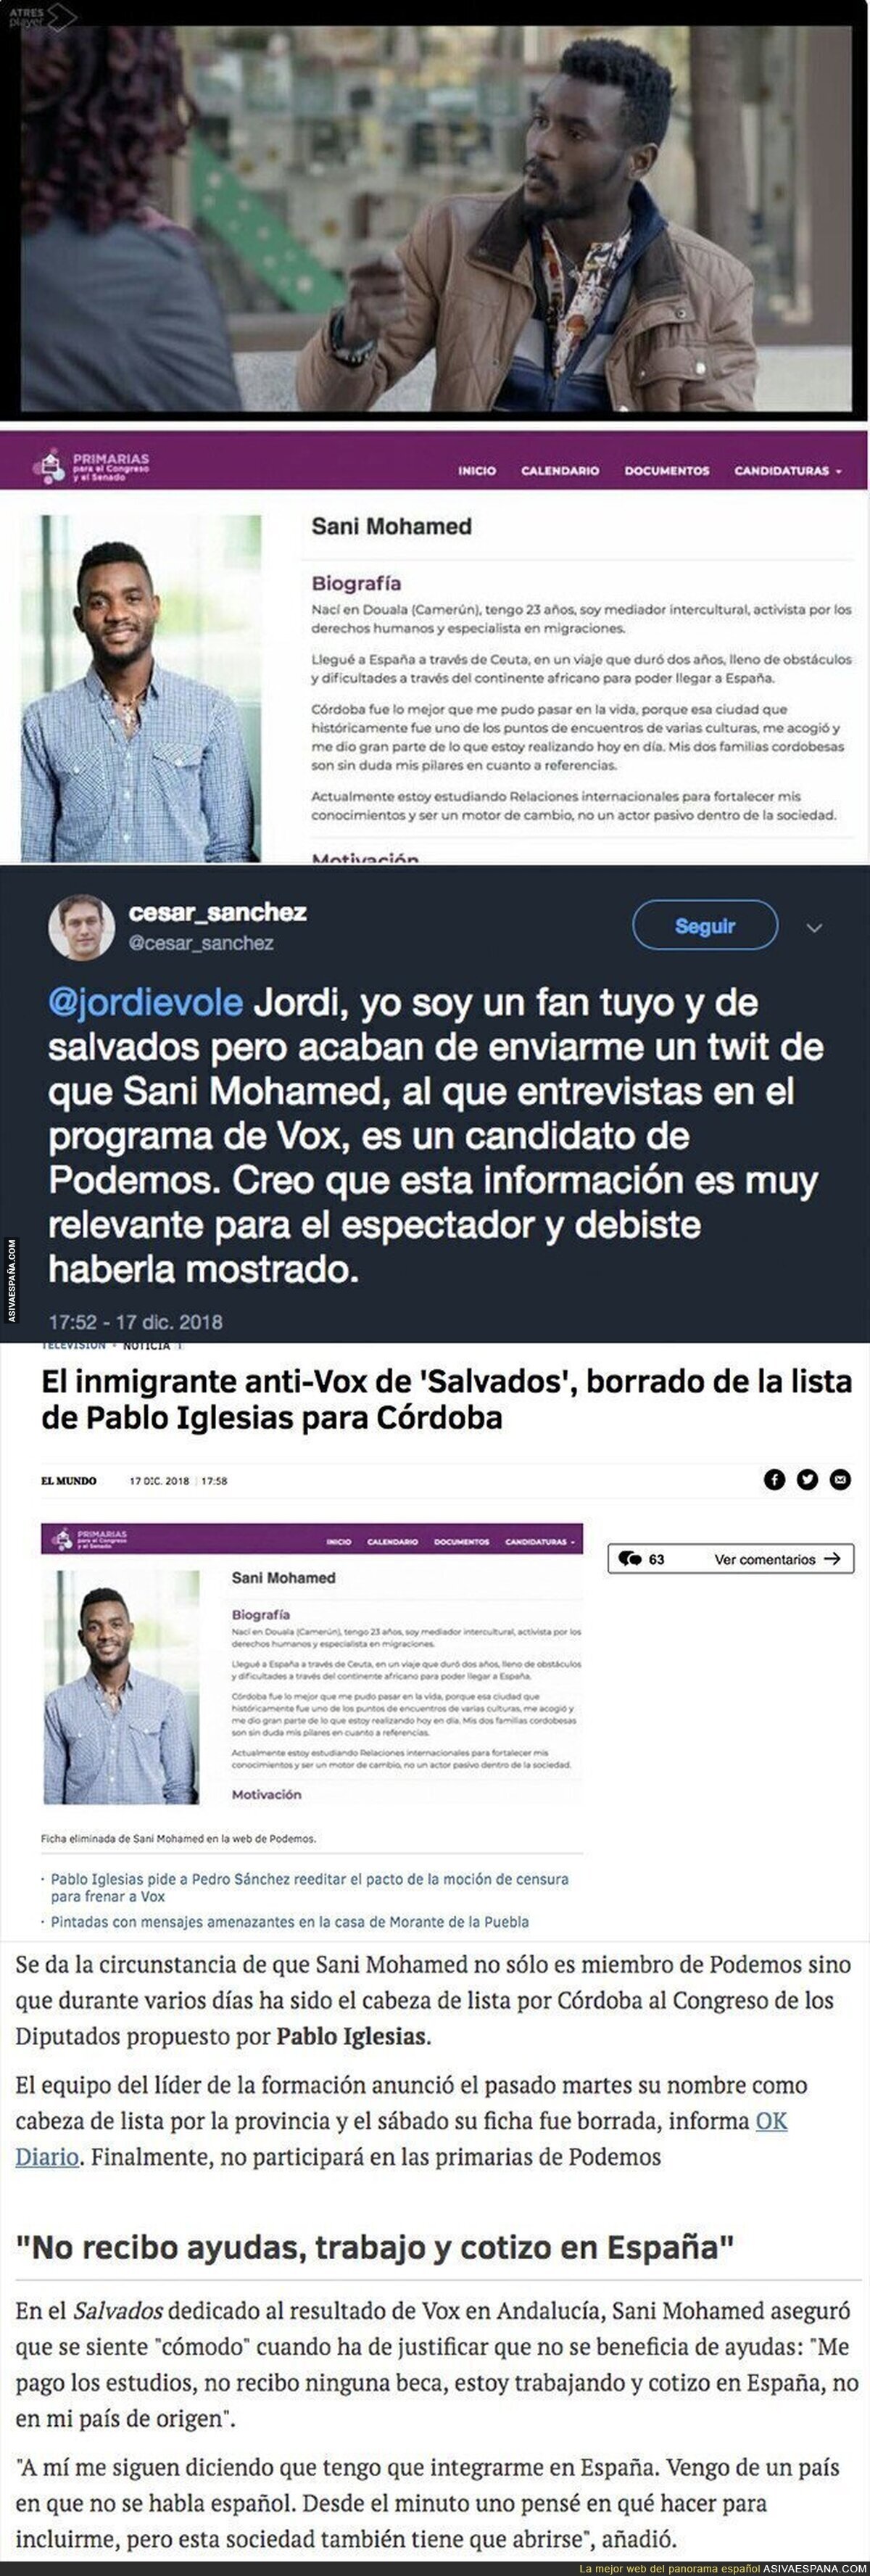 Jordi Évole entrevista a un inmigrante "cualquiera" para criticar a VOX y resulta ser un candidato de Podemos